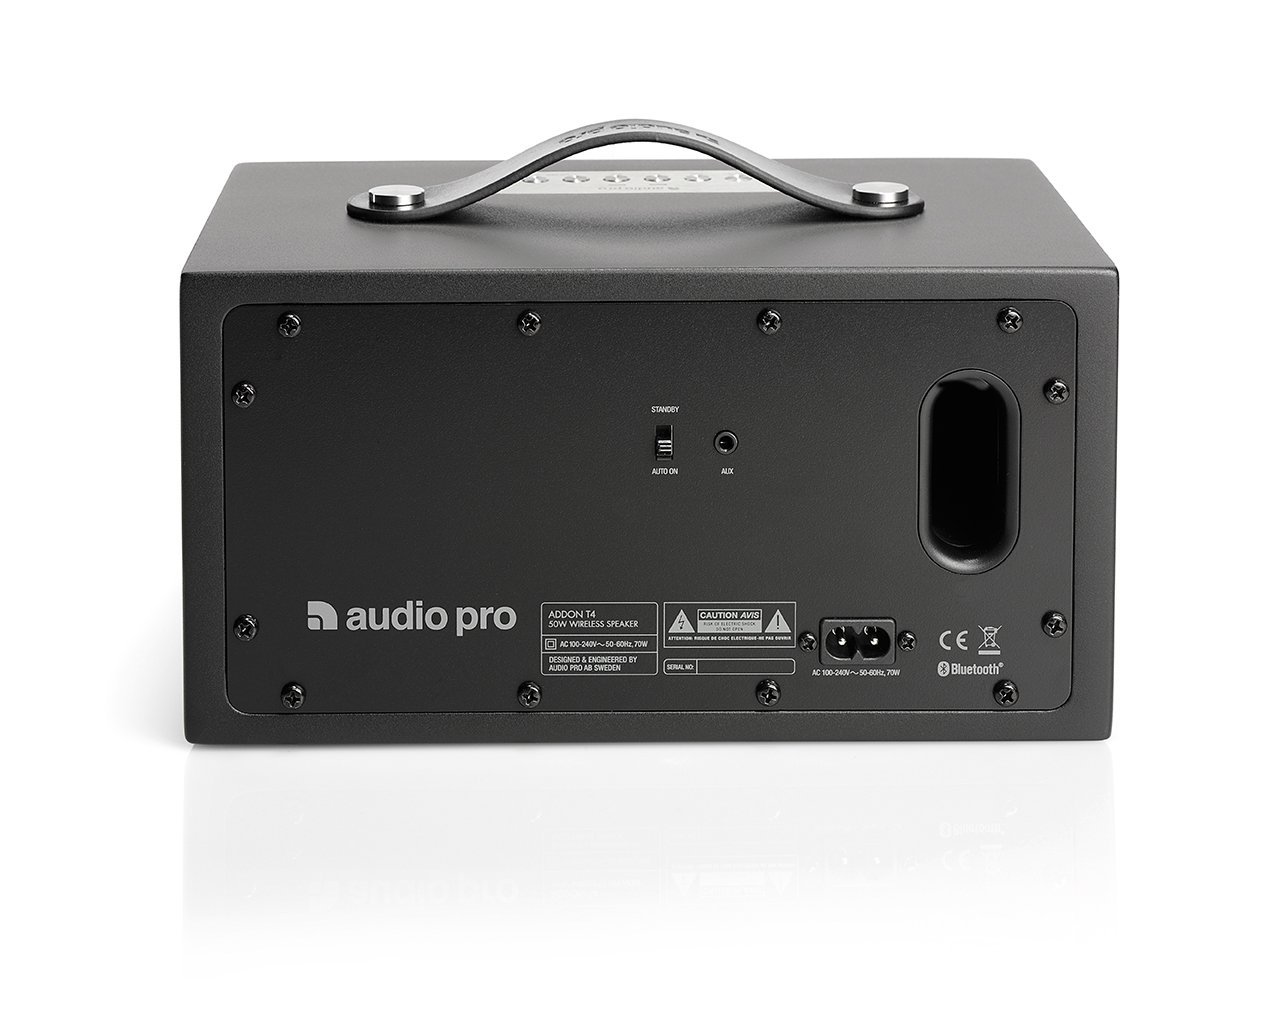 Loa Audio Pro Addon T4 – FullBox - Chuyên hàng hitech